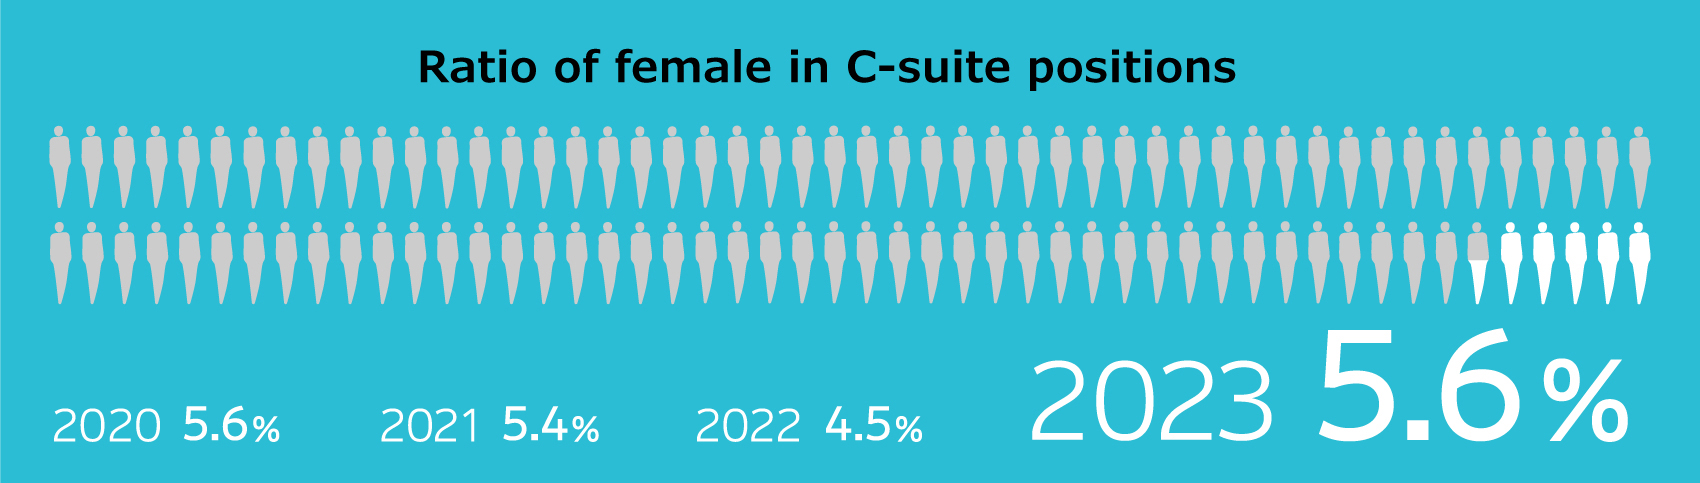 Ratio of female in C-suite positions